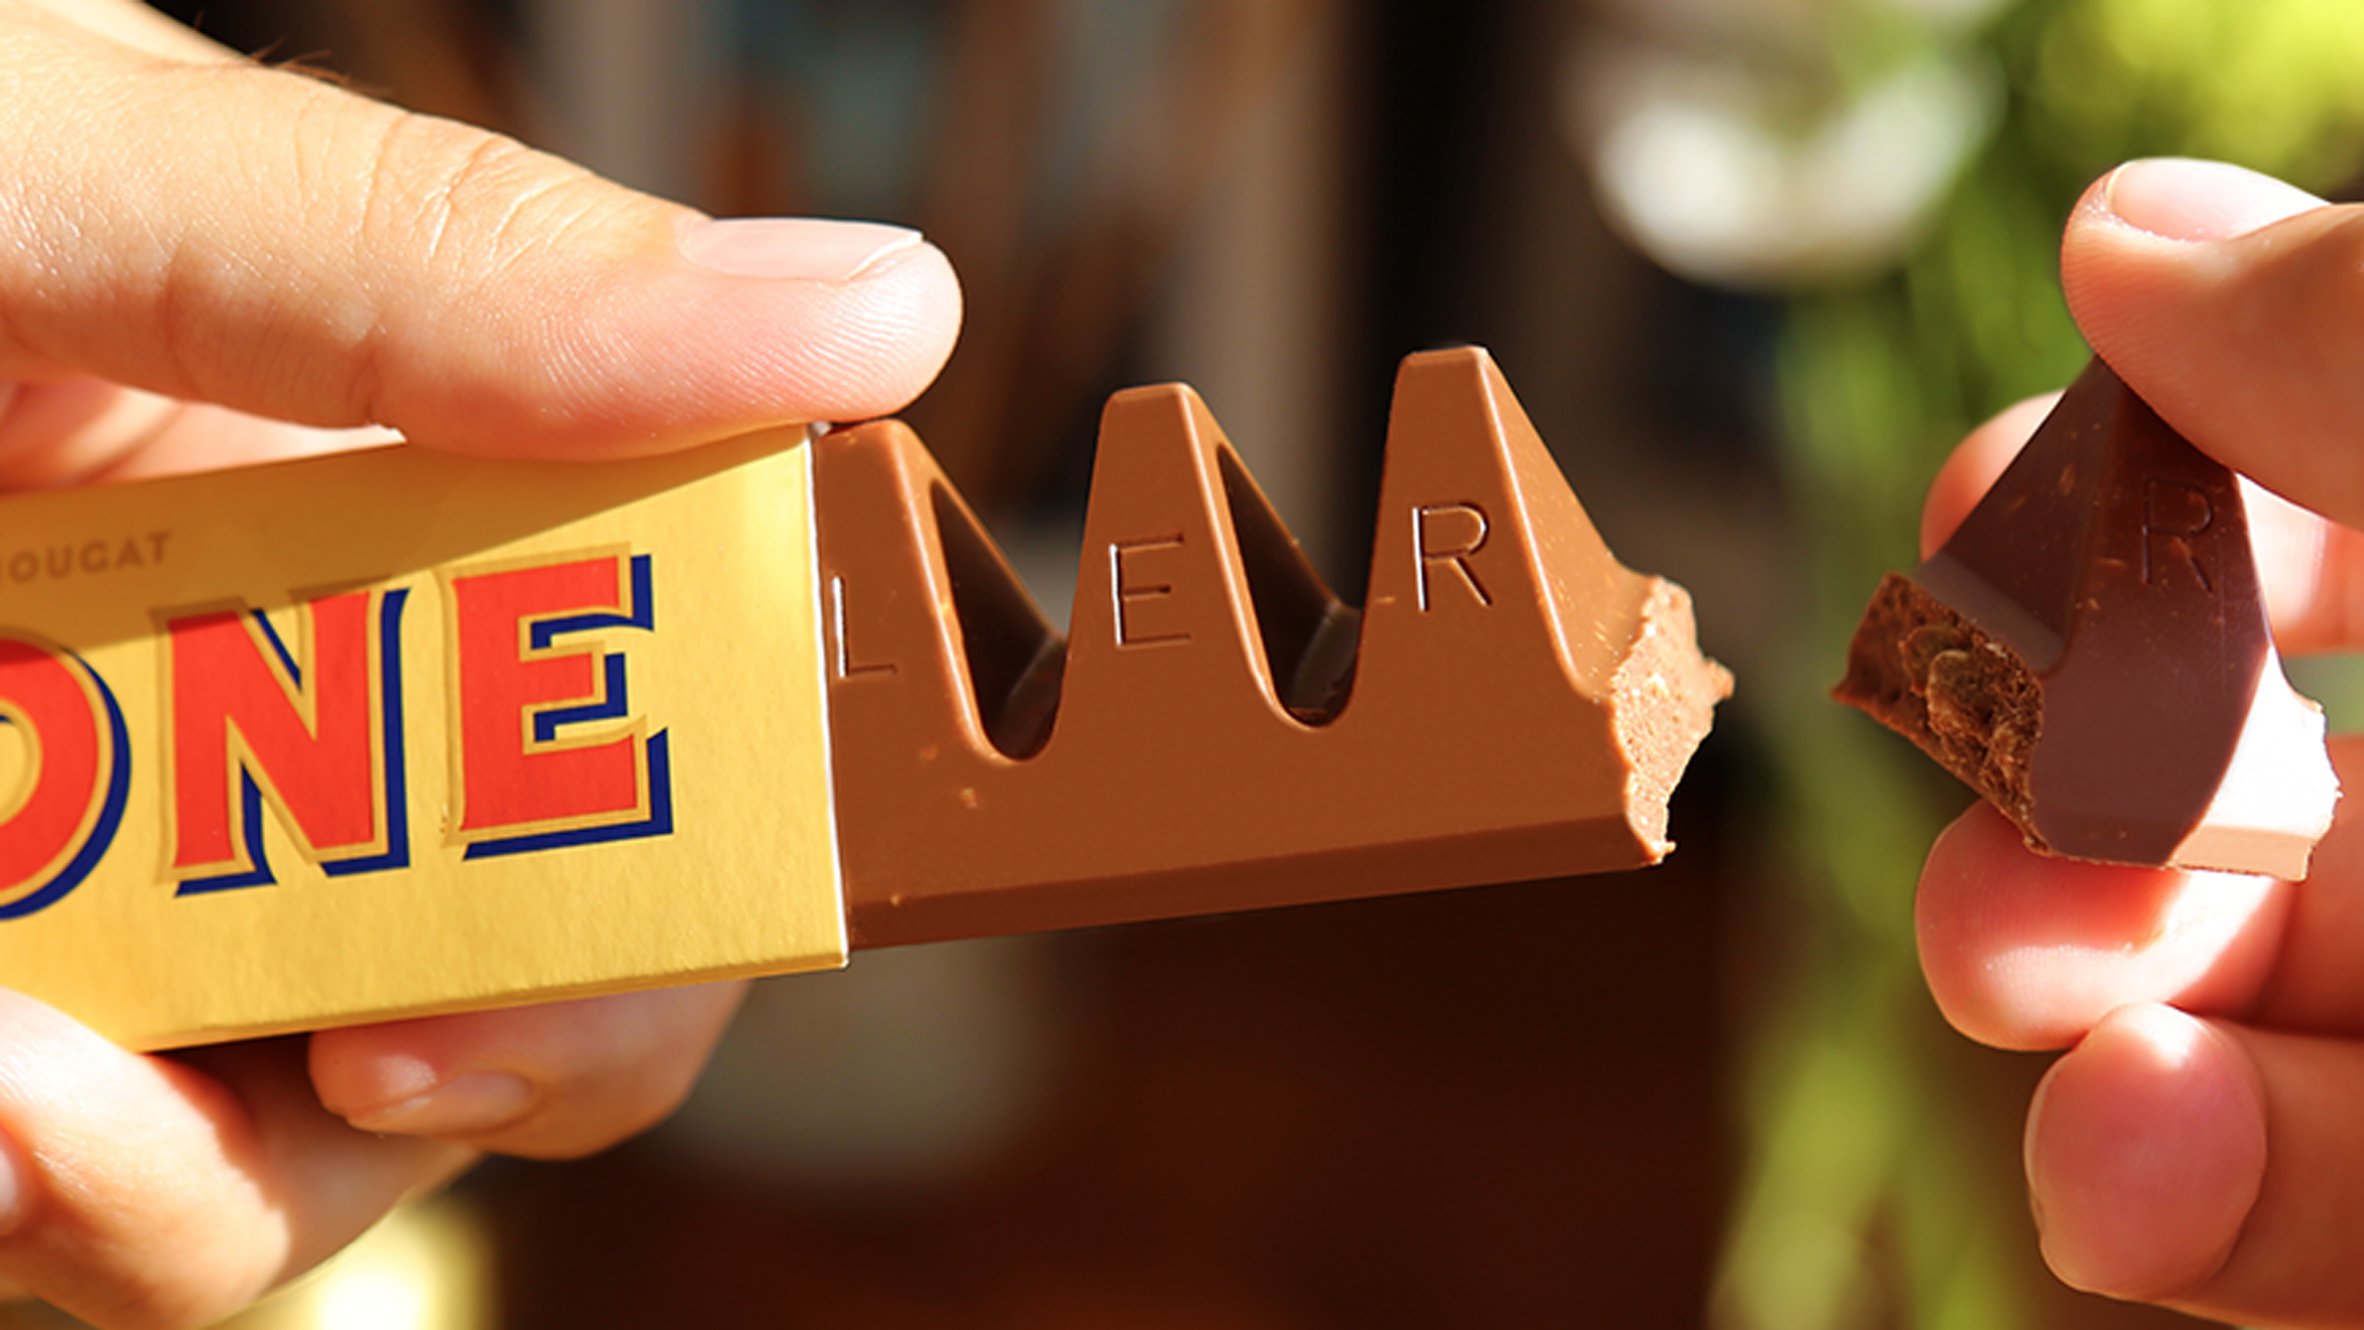 Toblerone mudou o formato do chocolate. A internet está revoltada